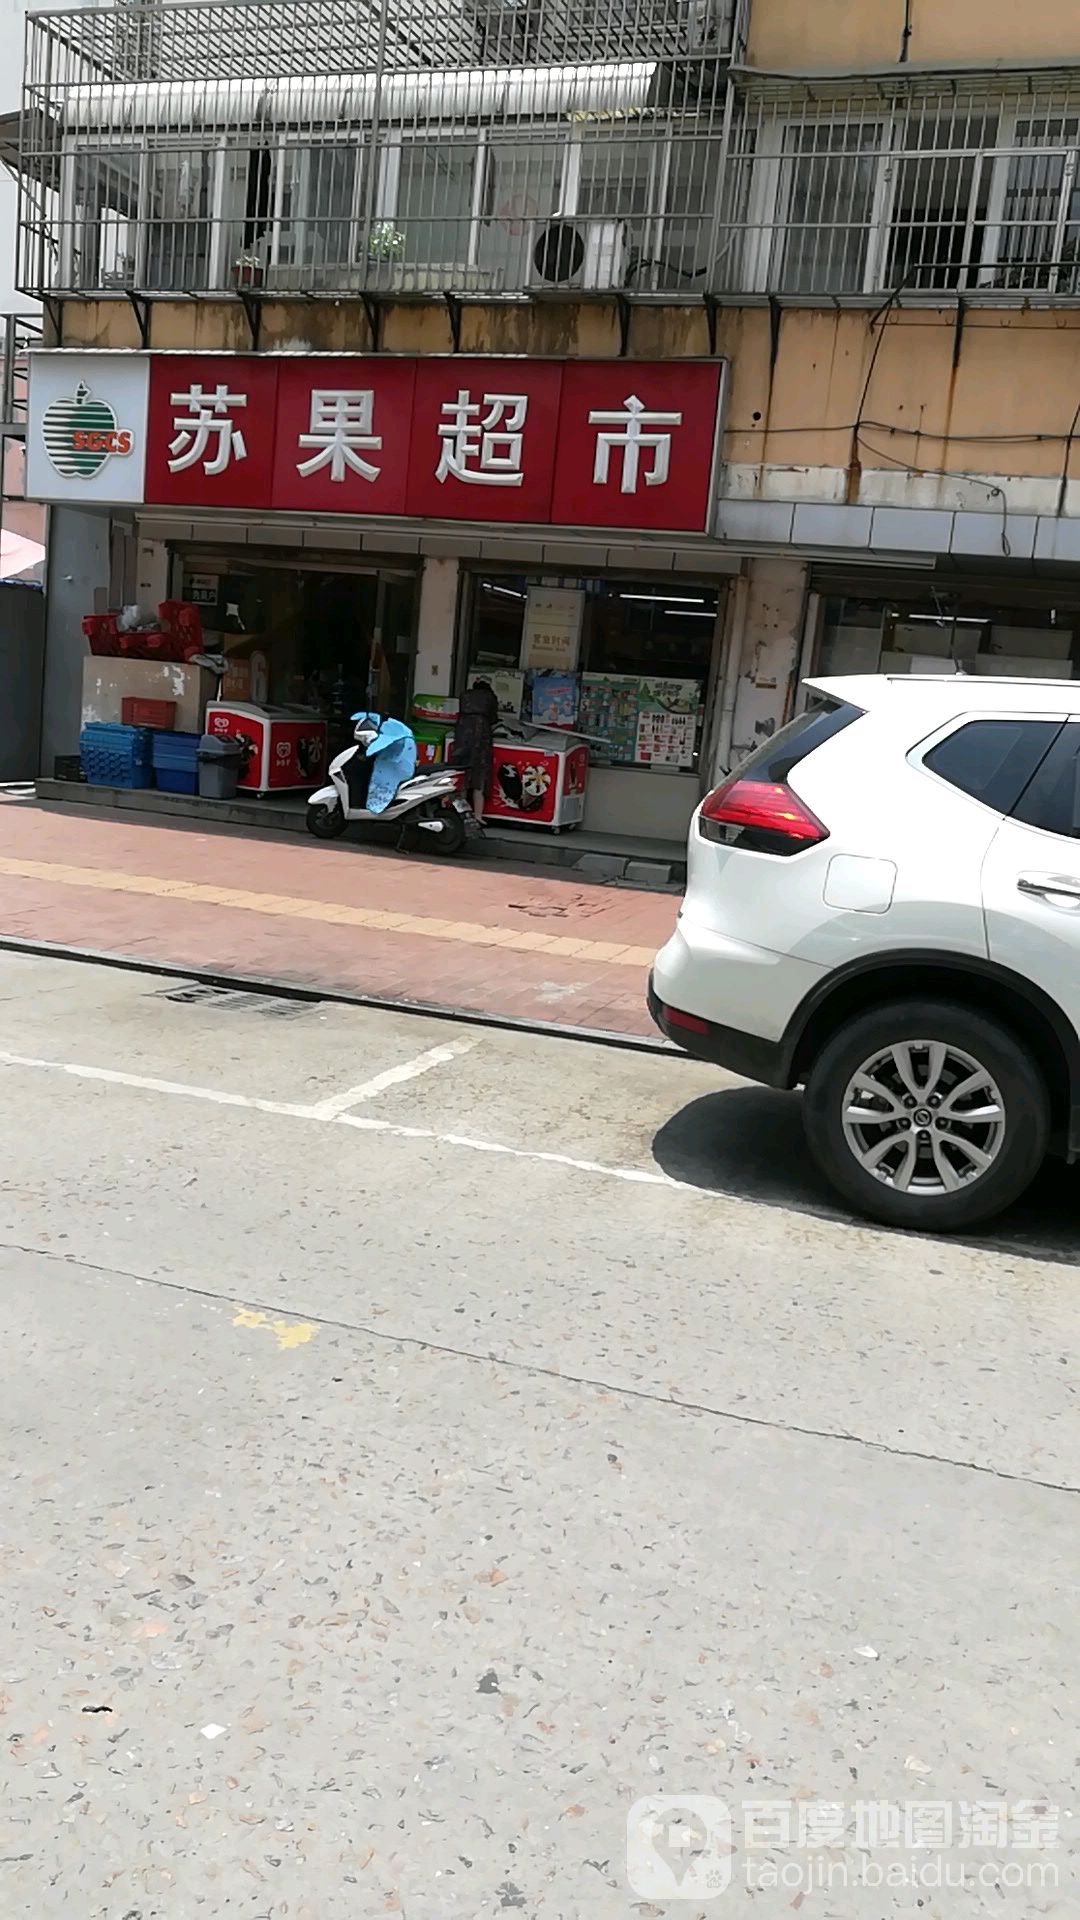 苏果超市(生化新村店)